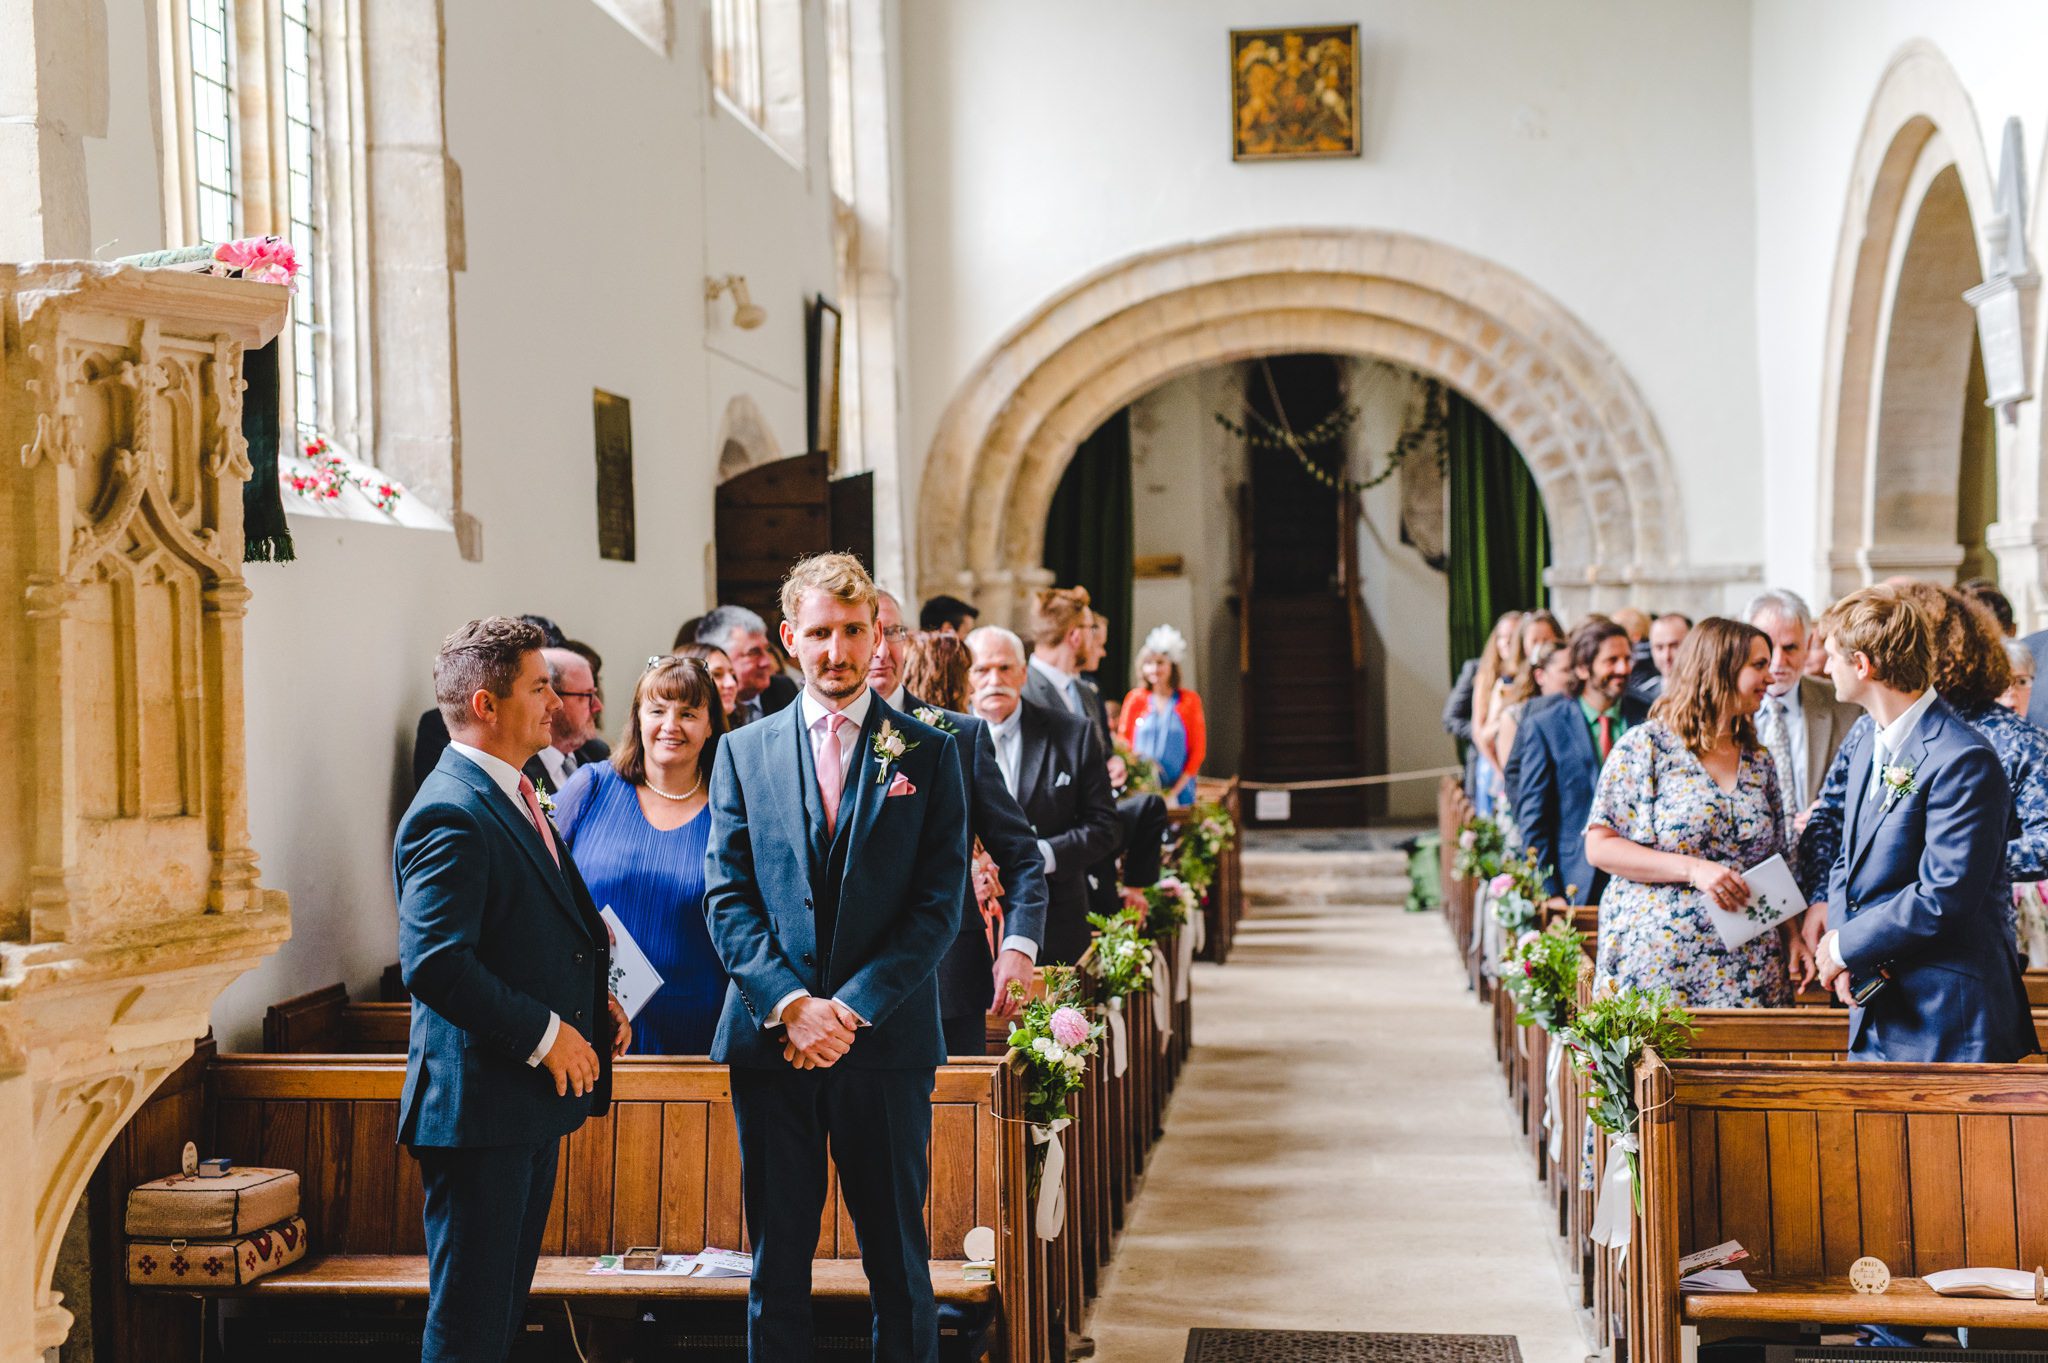 A wedding at Chedworth Church